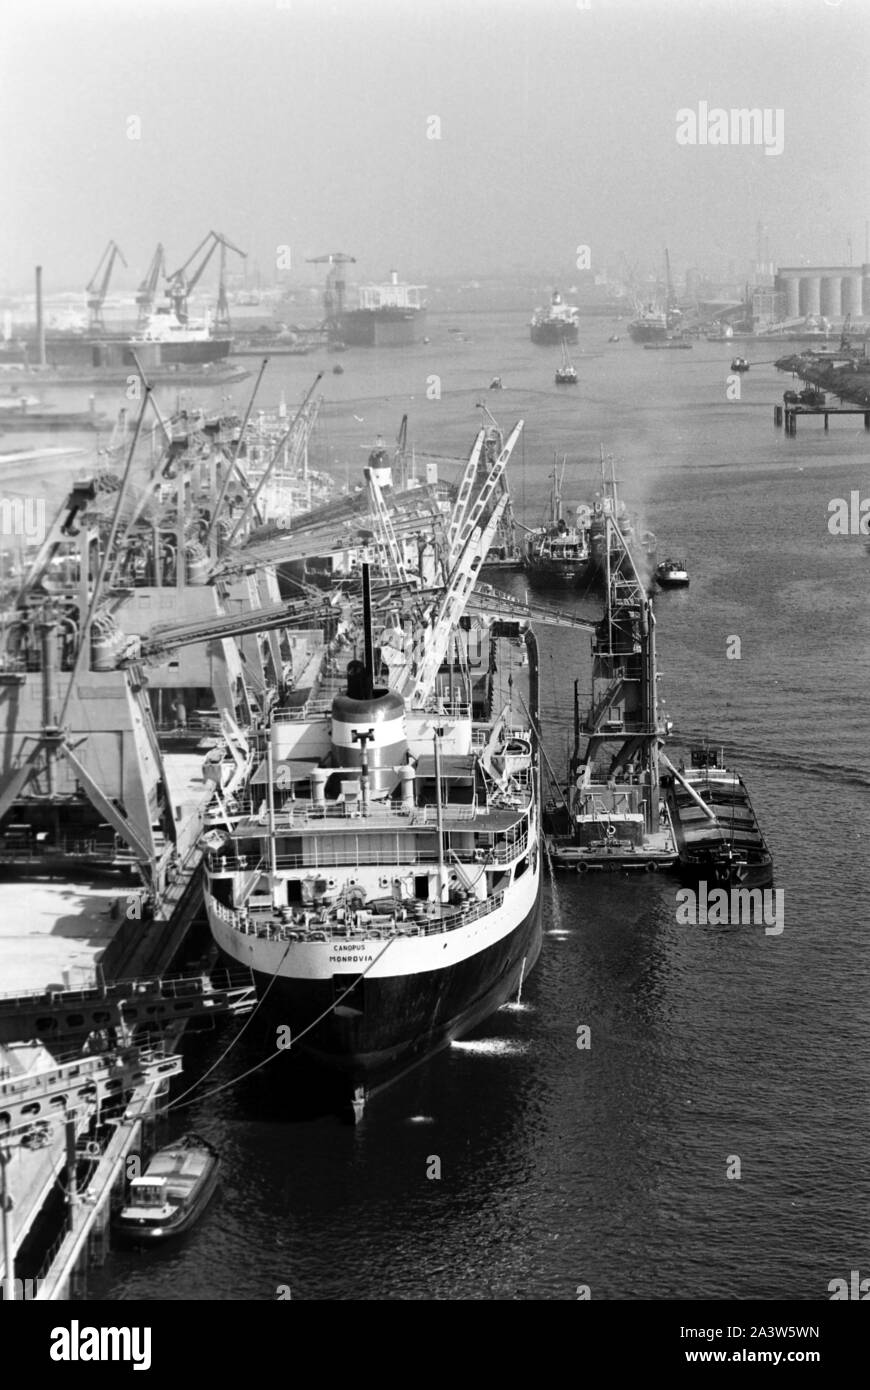 Umschag von Fracht und Containern an einem Terminal im Hafen von Rotterdam, Niederlande 1971. Handling of cargo containers at a terminal of Rotterdam port, The Netherlands 1971. Stock Photo